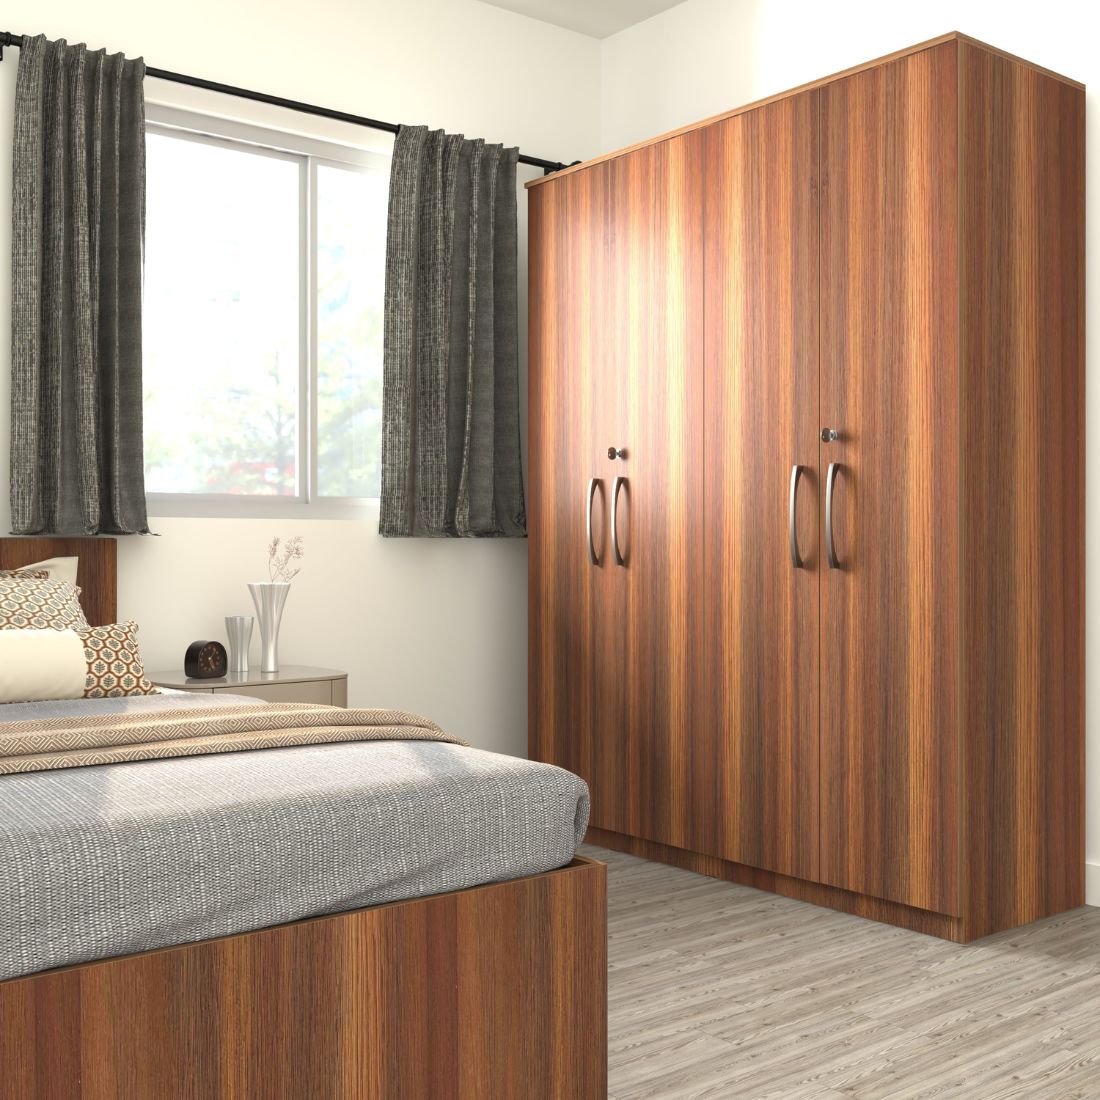 4 door wardrobe designs for bedroom